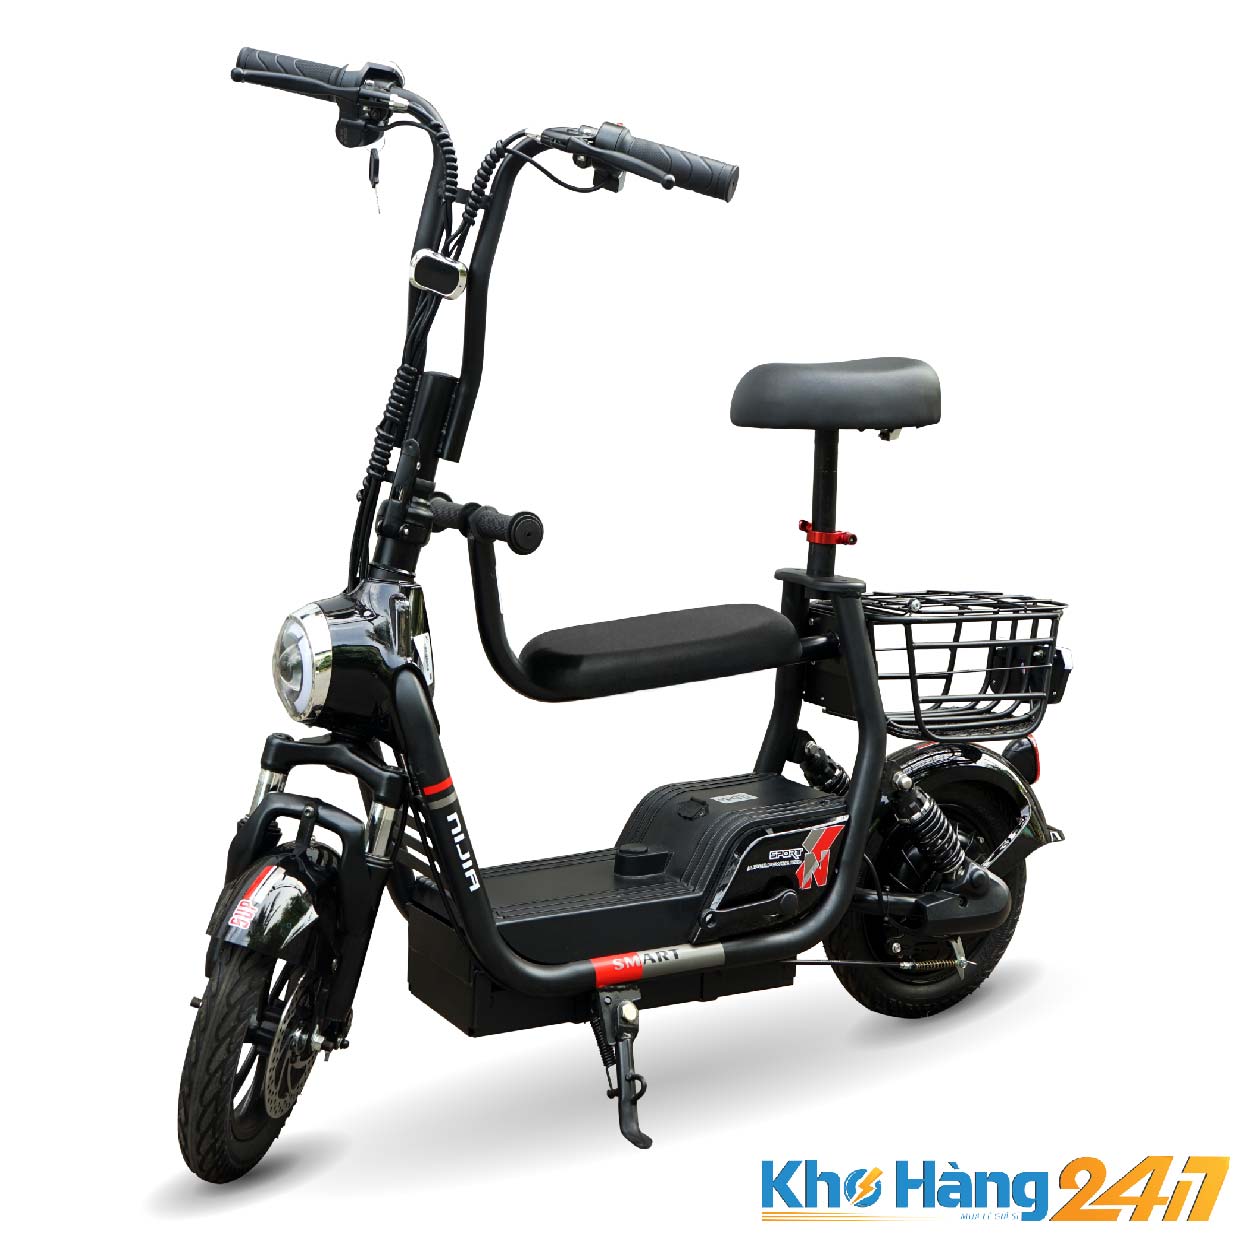 xe dap dien nijia smart 2 yen khohang247 01 - Xe đạp điện NIJIA SMART 2 yên